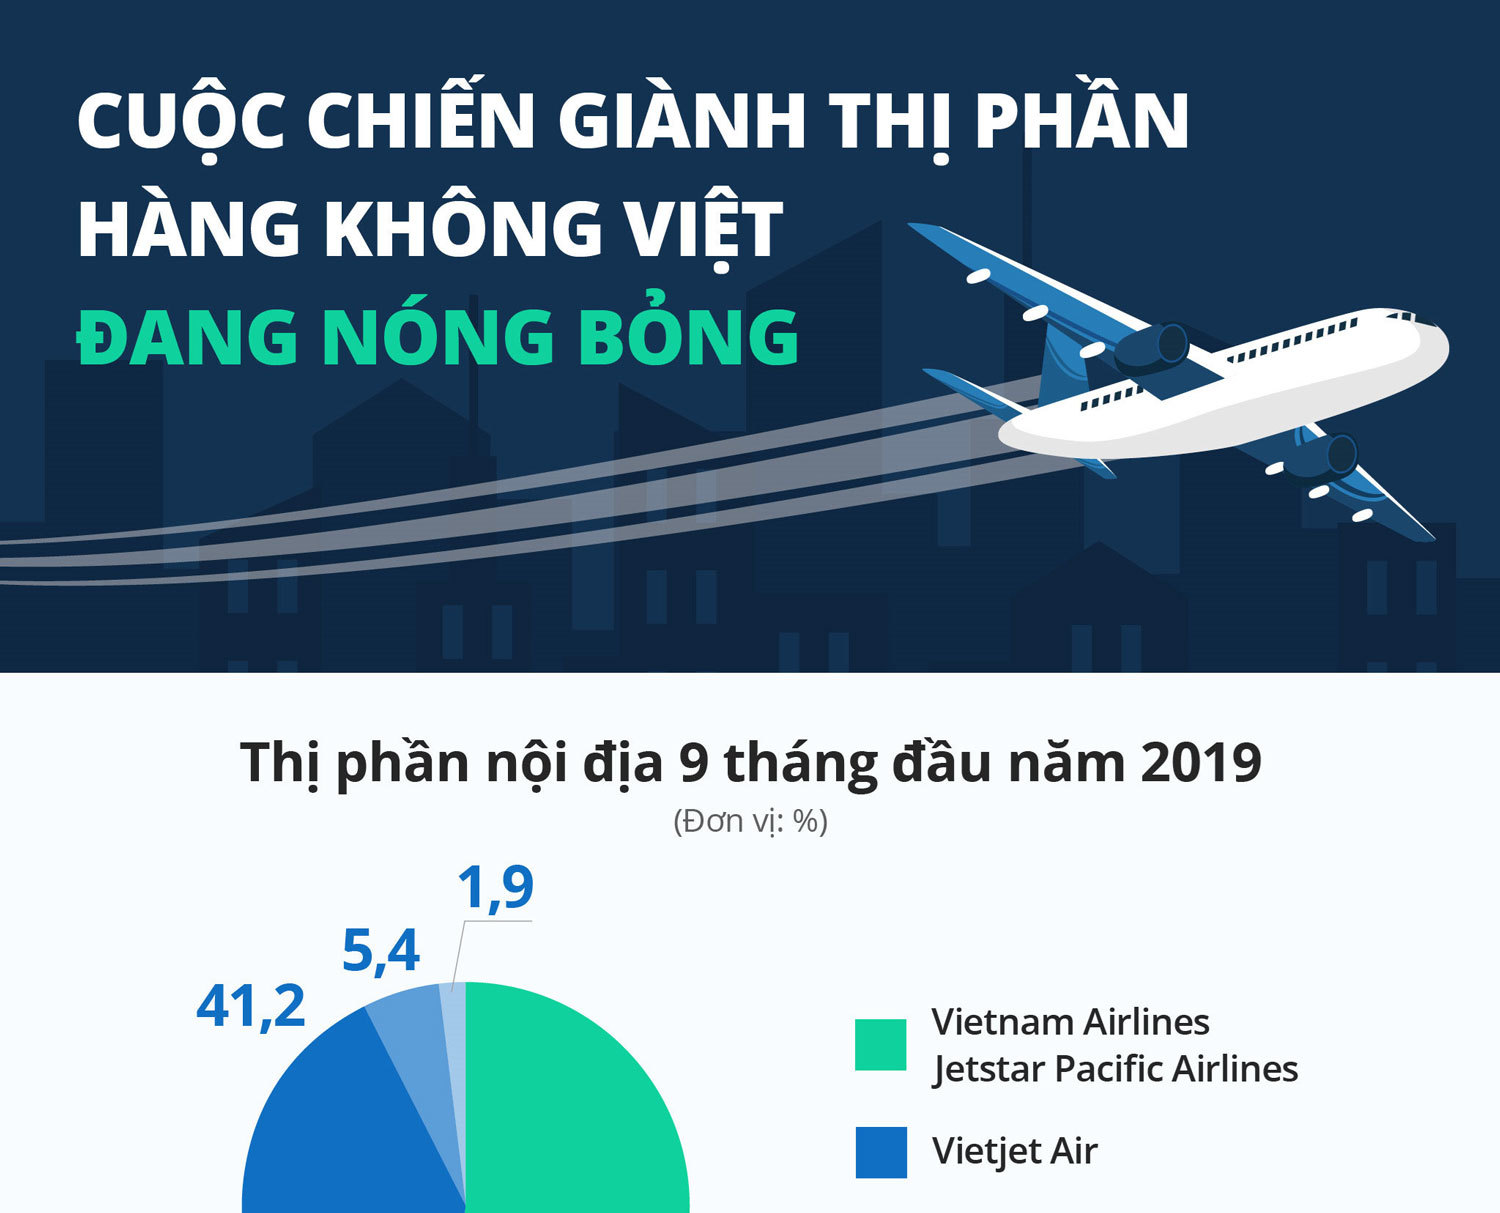 Sức nóng của cuộc chiến giành thị phần hàng không Việt